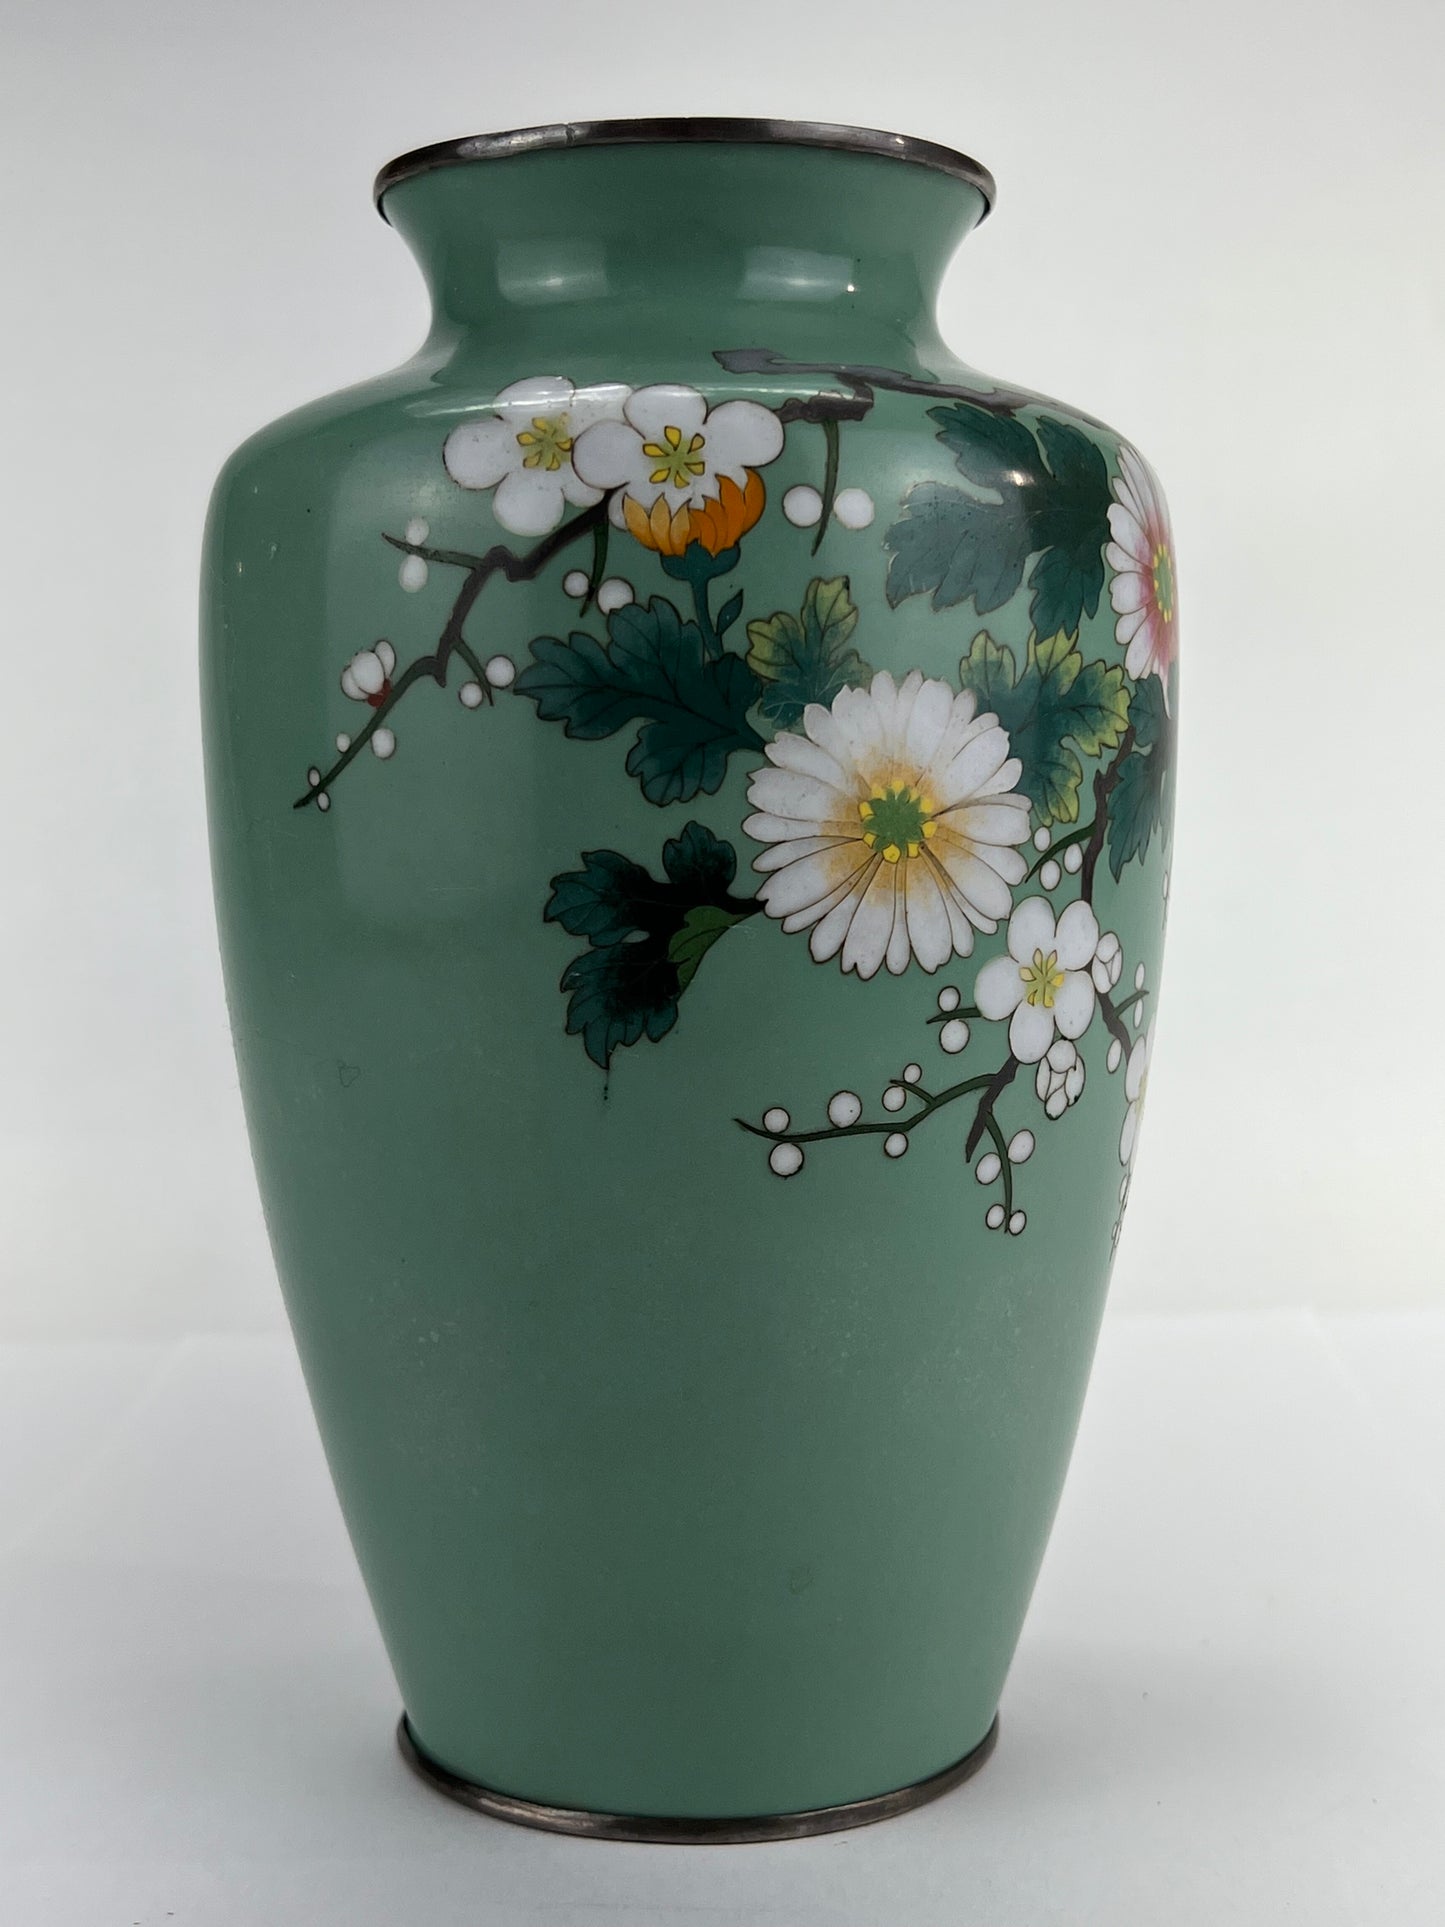 Antique Japanese Meiji Era (late 1800's) Cloisonné Vase Teal w/ Plum Blossoms 7”